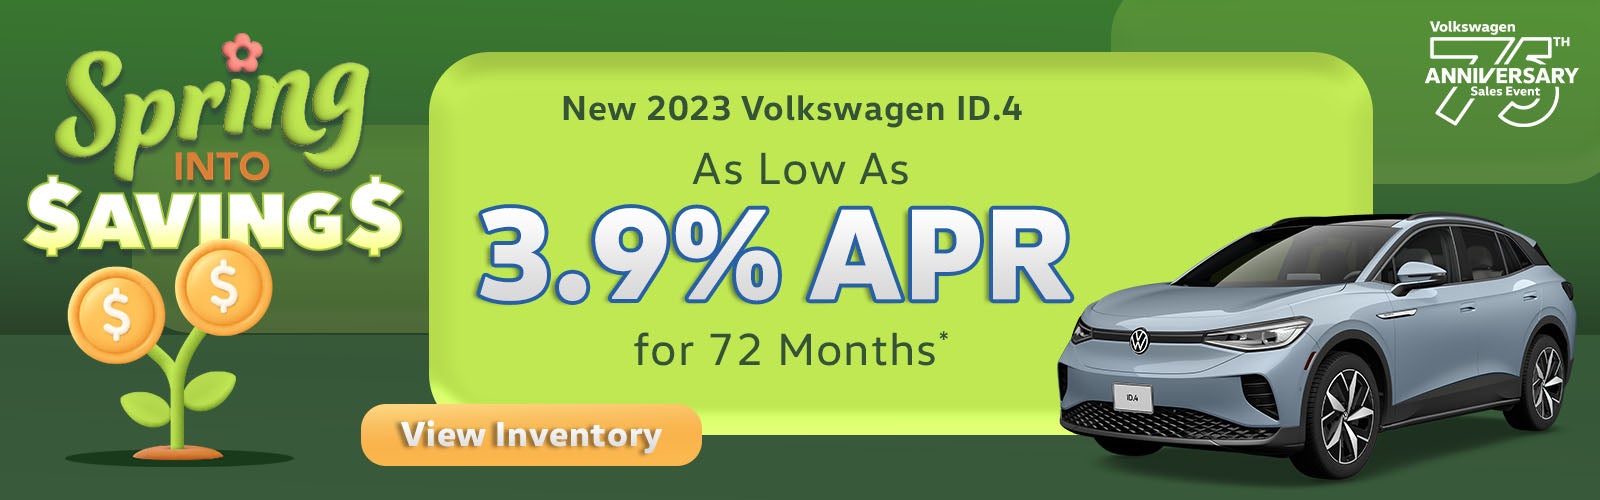 New 2023 Volkswagen ID.4 